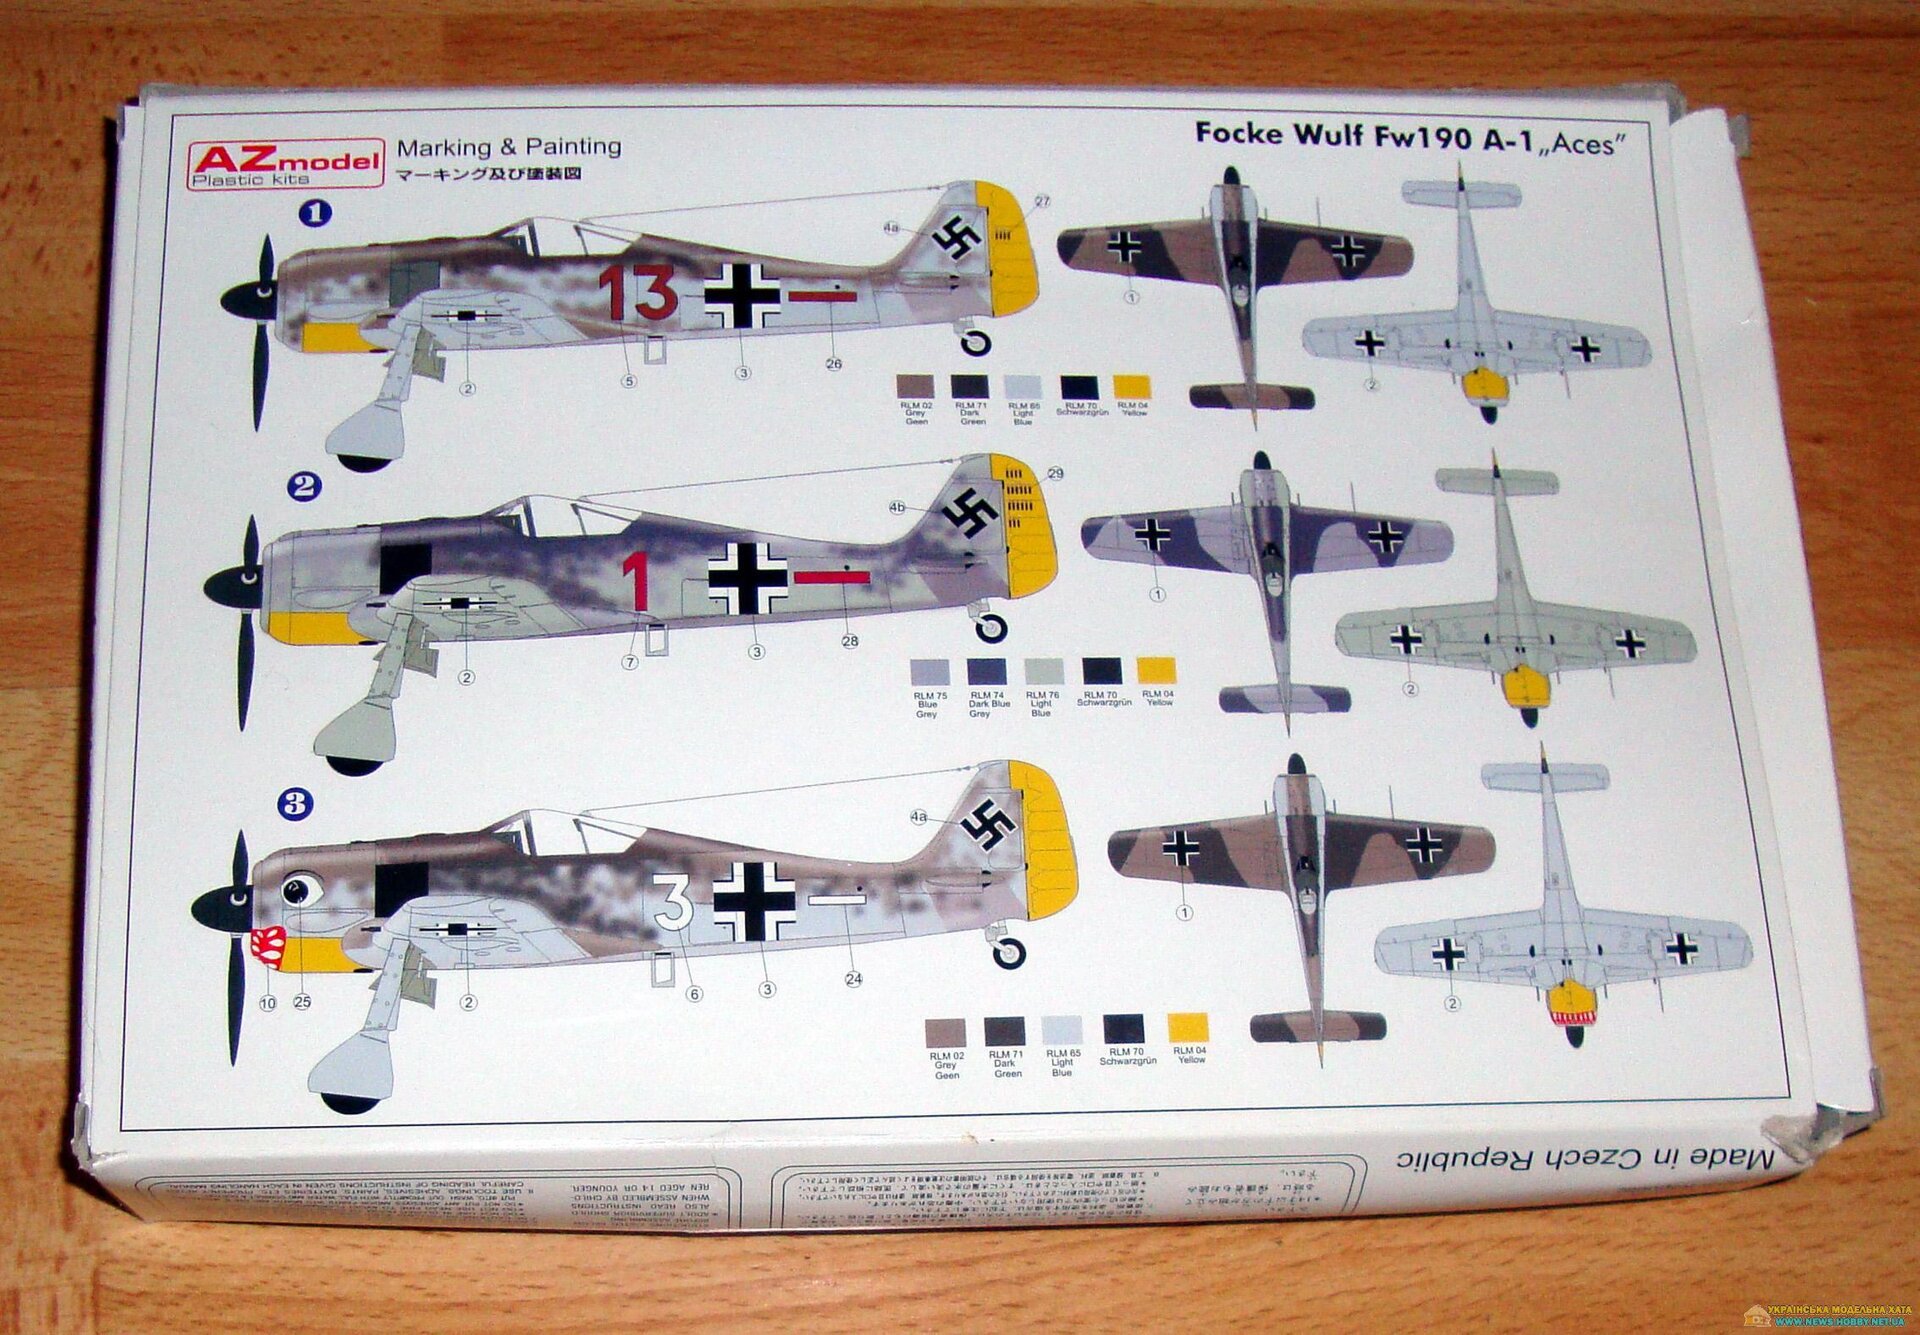 Focke Wulf FW190-1 Aces AZmodel AZ 7267 - фото pic_92b1a505ca3eb558a1fac9b8cf8ef284_1920x9000_1.jpg